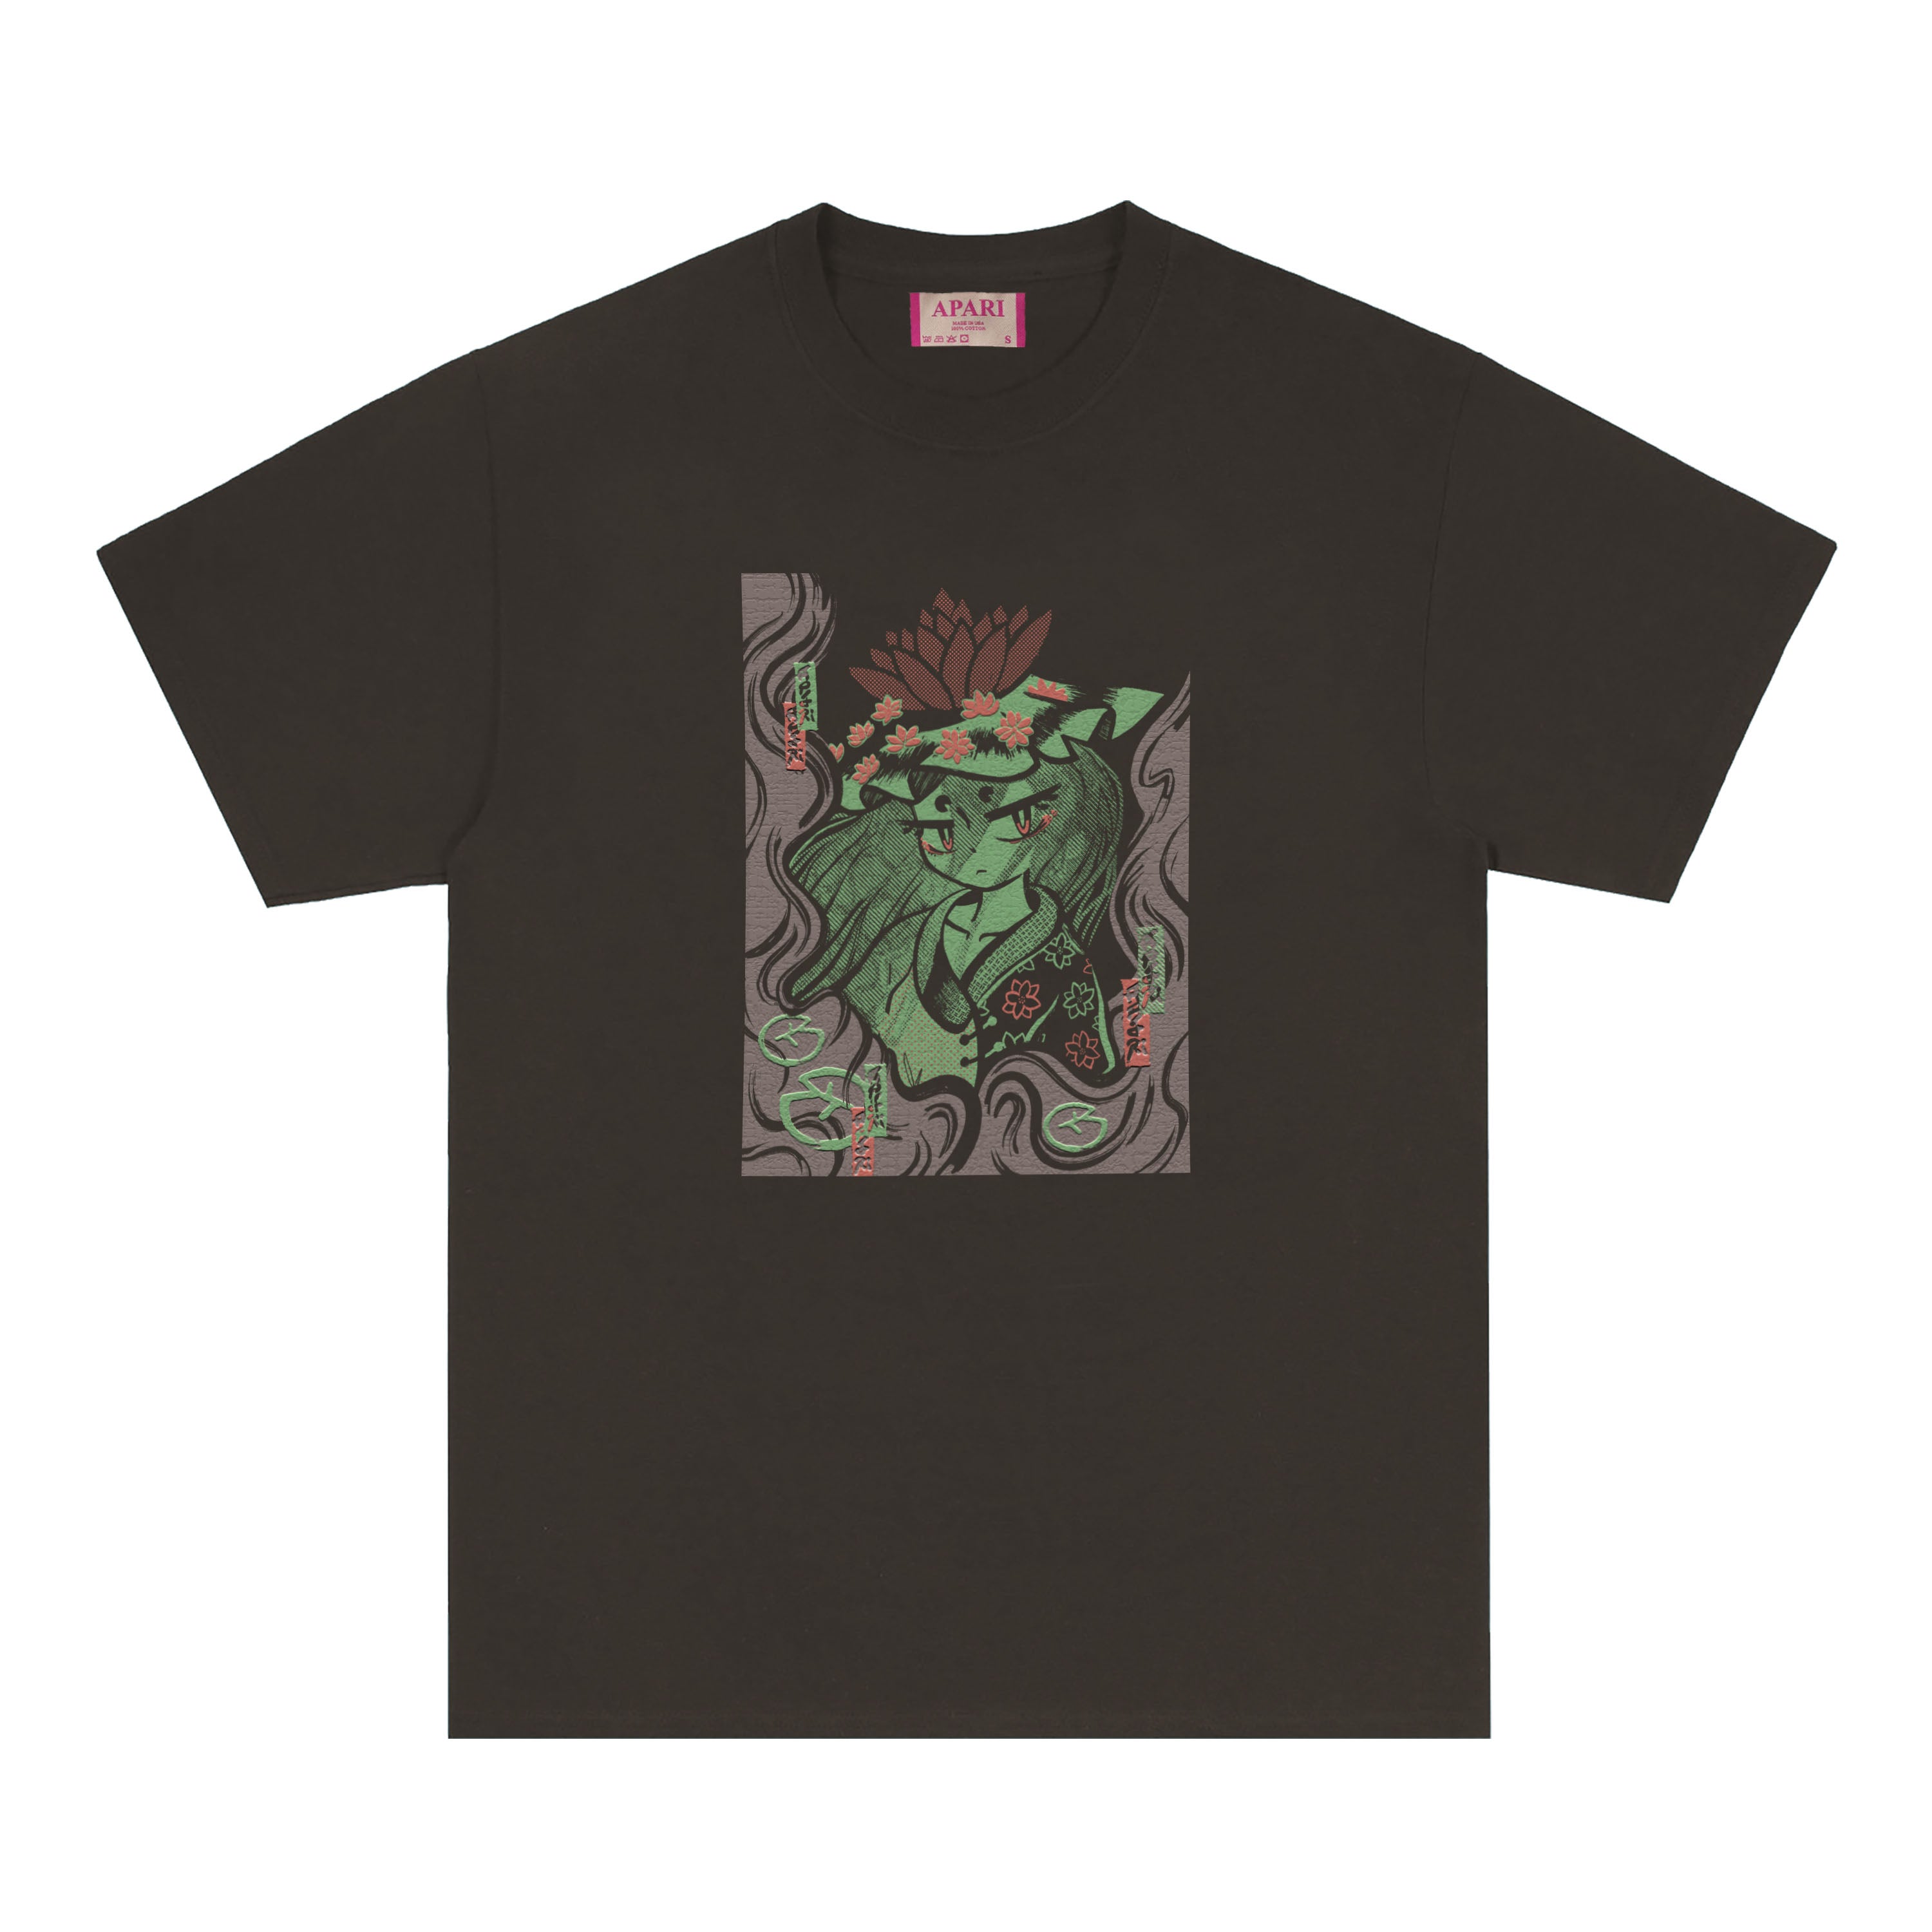 Kappa T-Shirt Clove – Apari